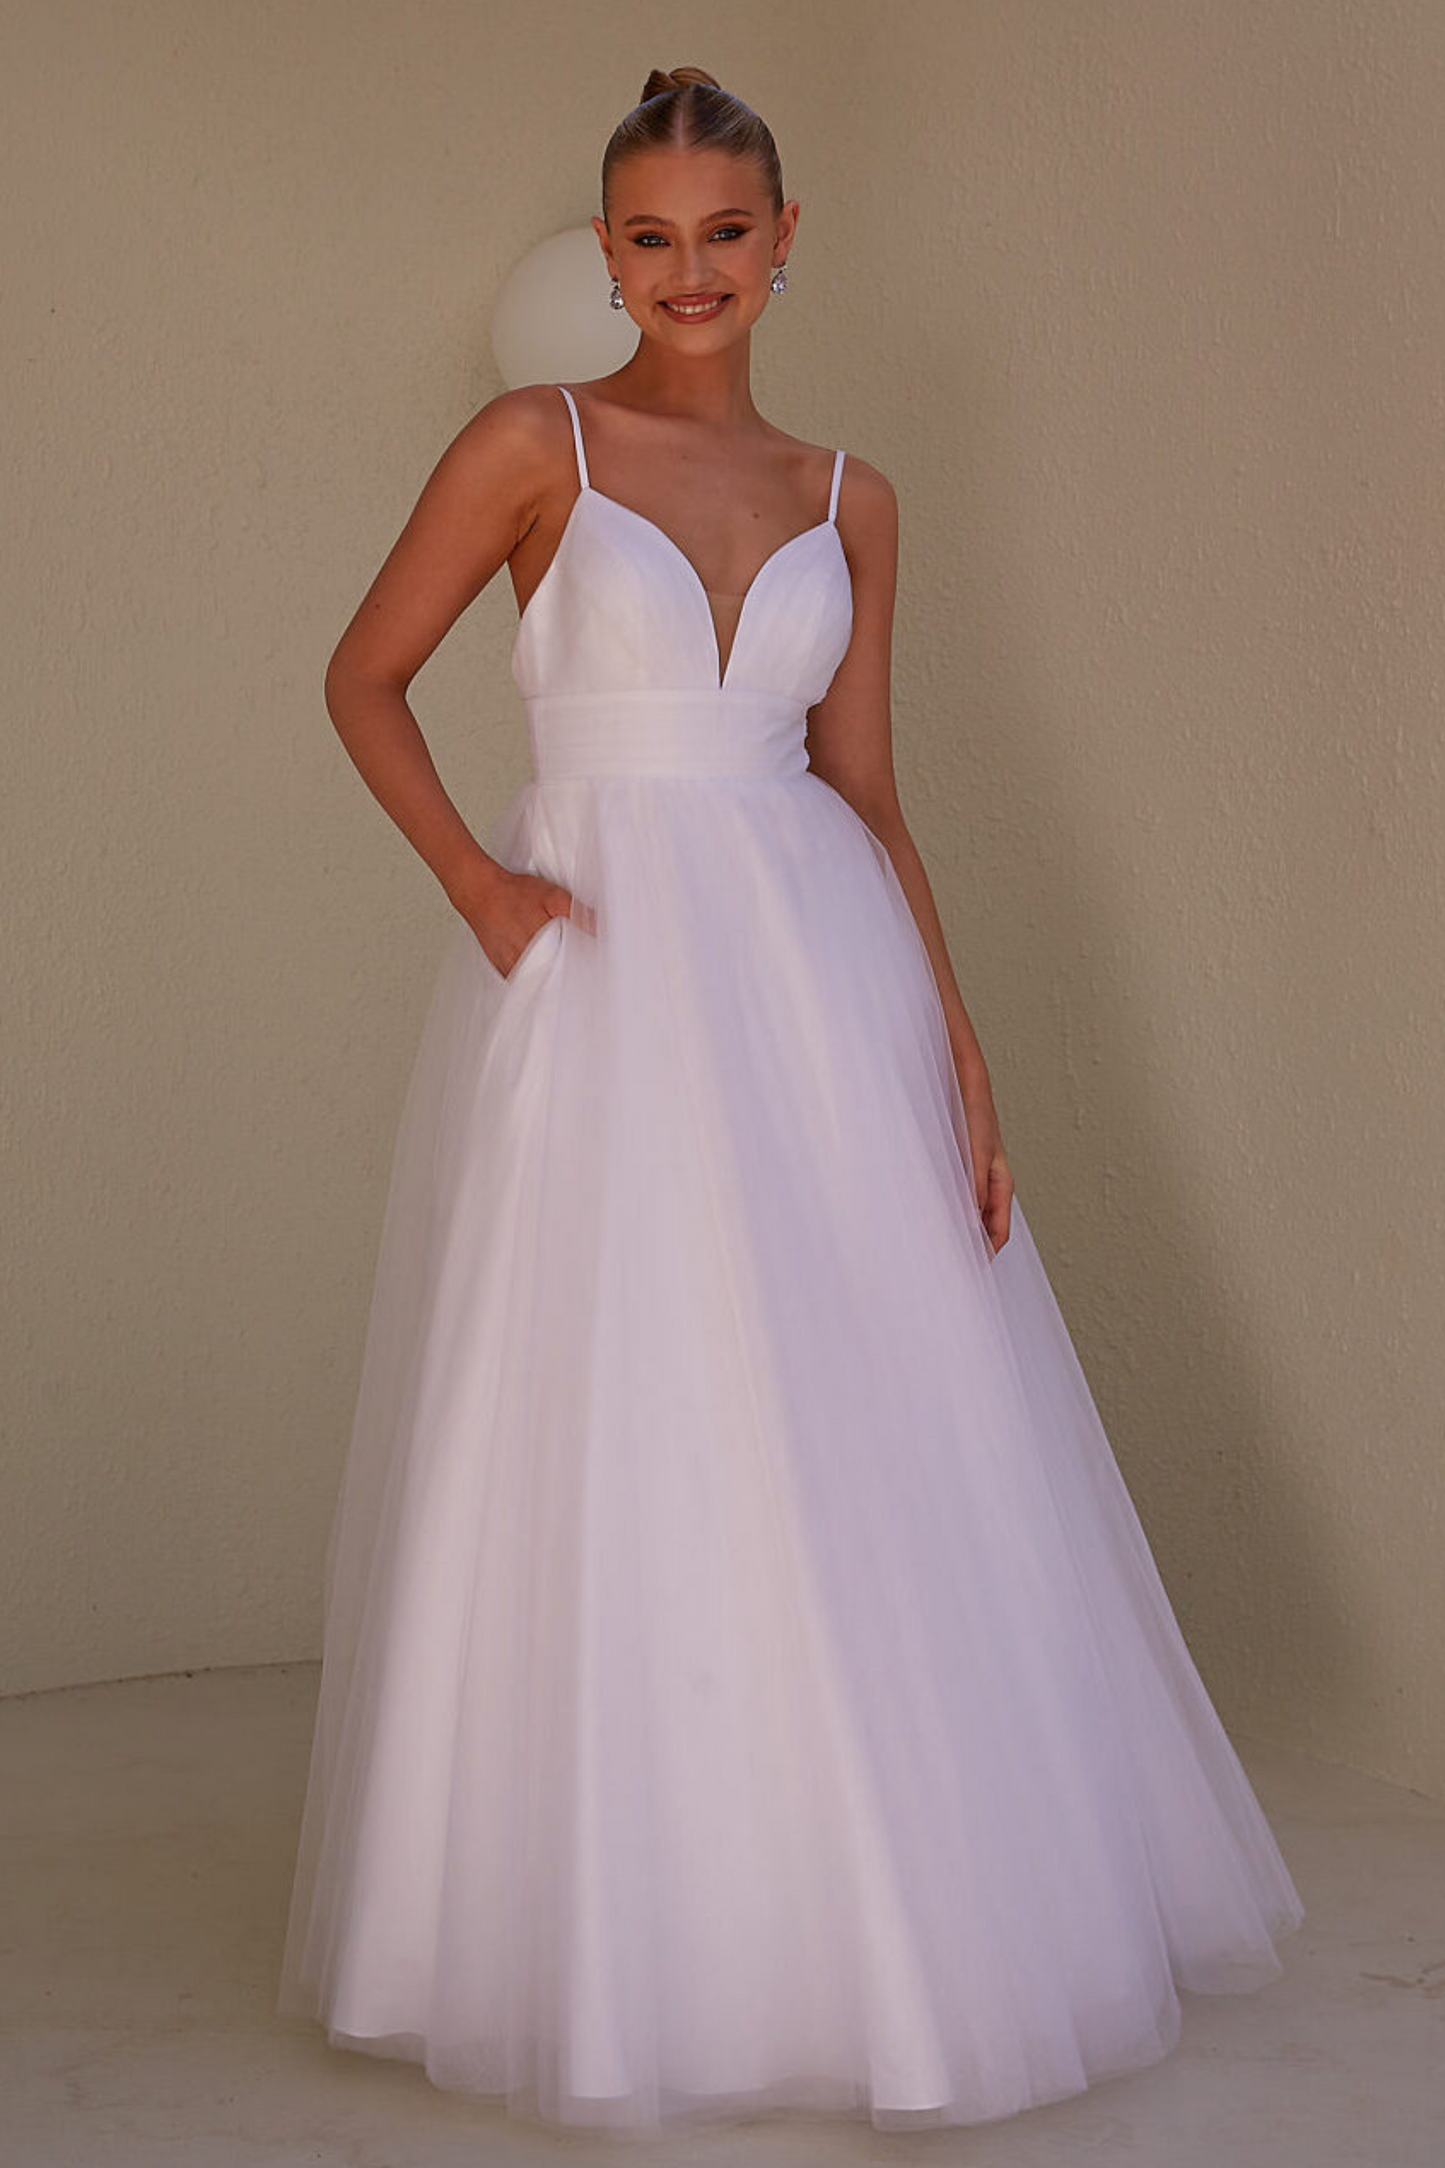 Tania Olsen Ballgown debutante dress in pure white tulle